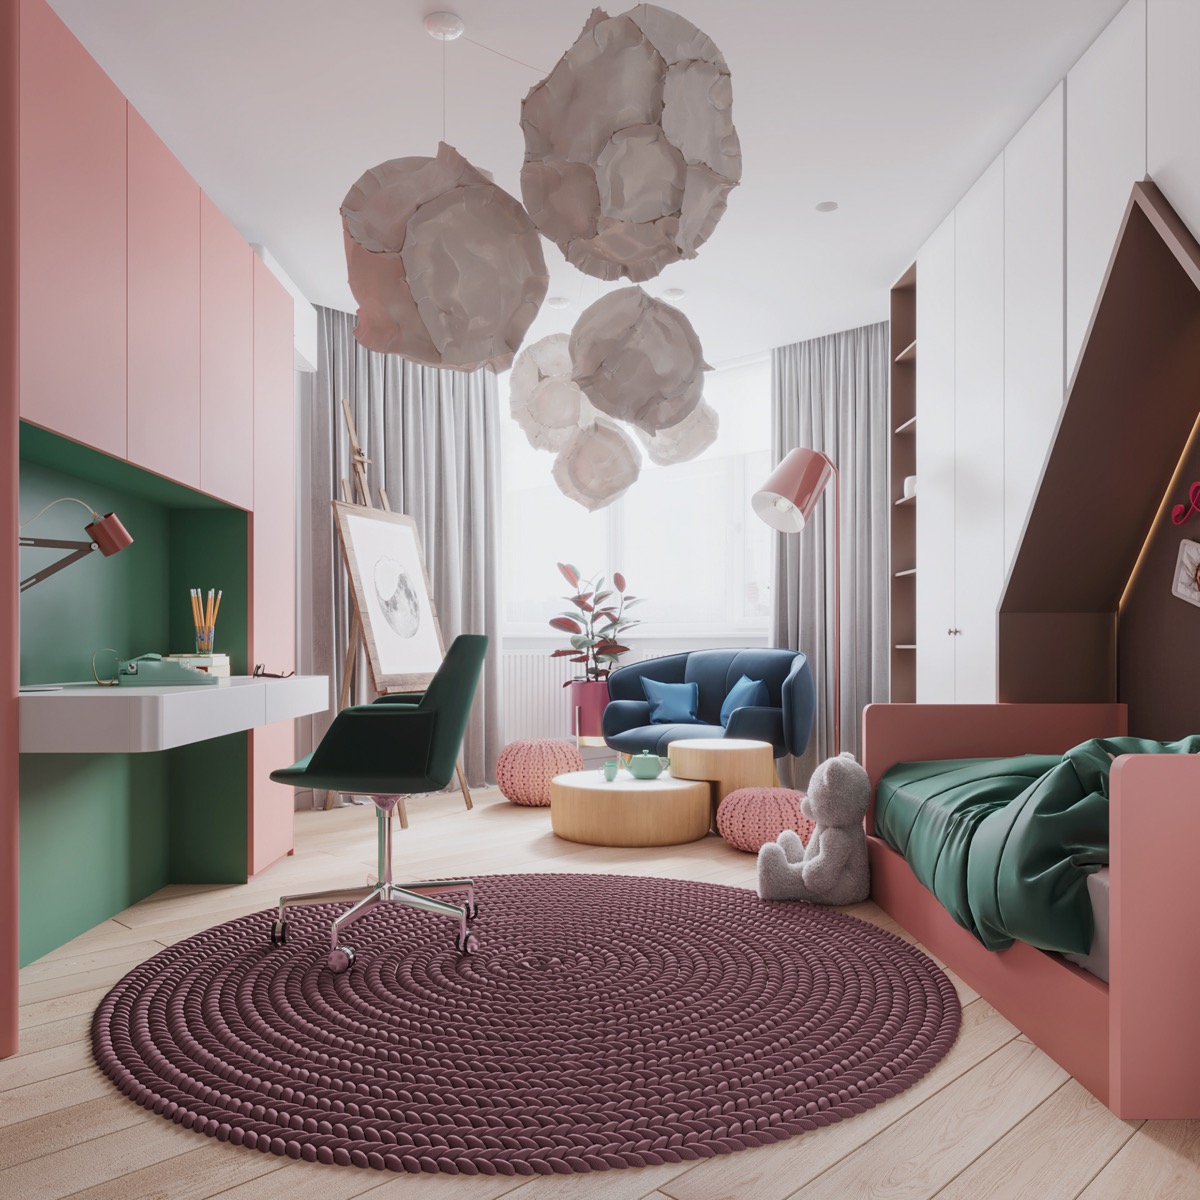 kids-bedroom-rug-600x600.jpg